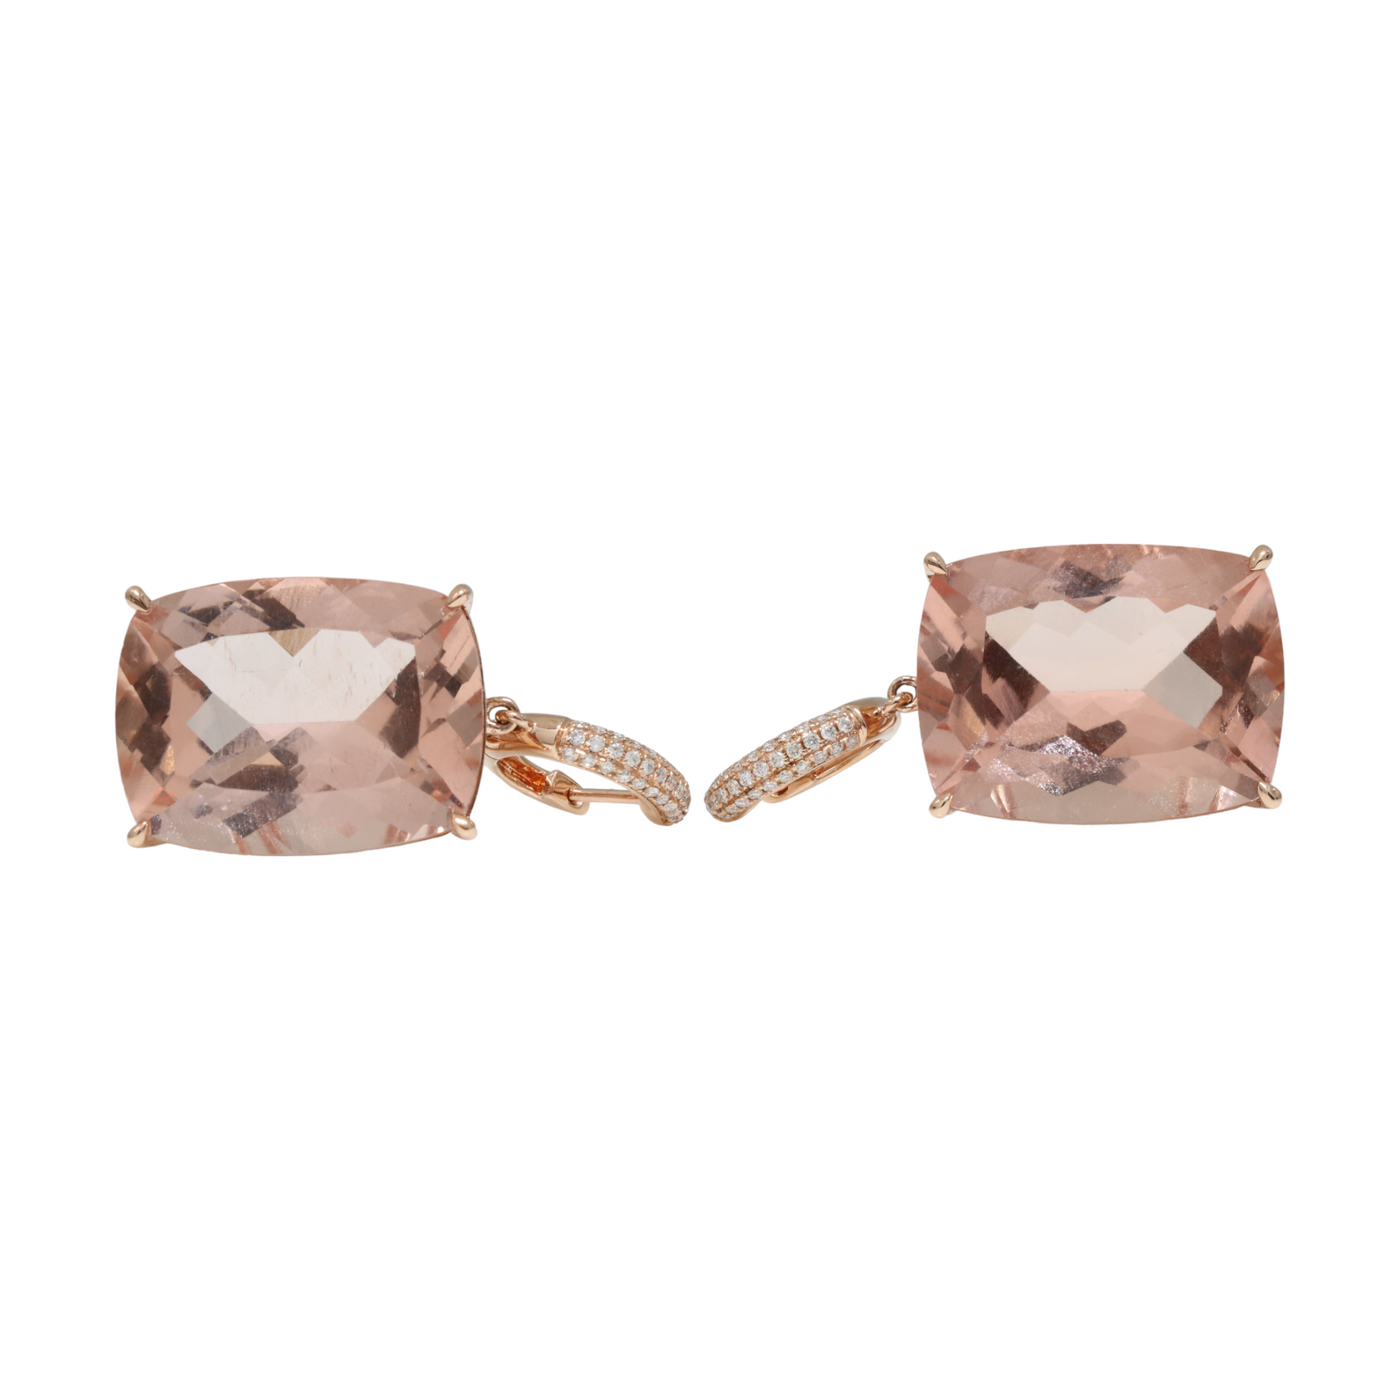 18ct Rose Gold Morganite and Diamond Earrings